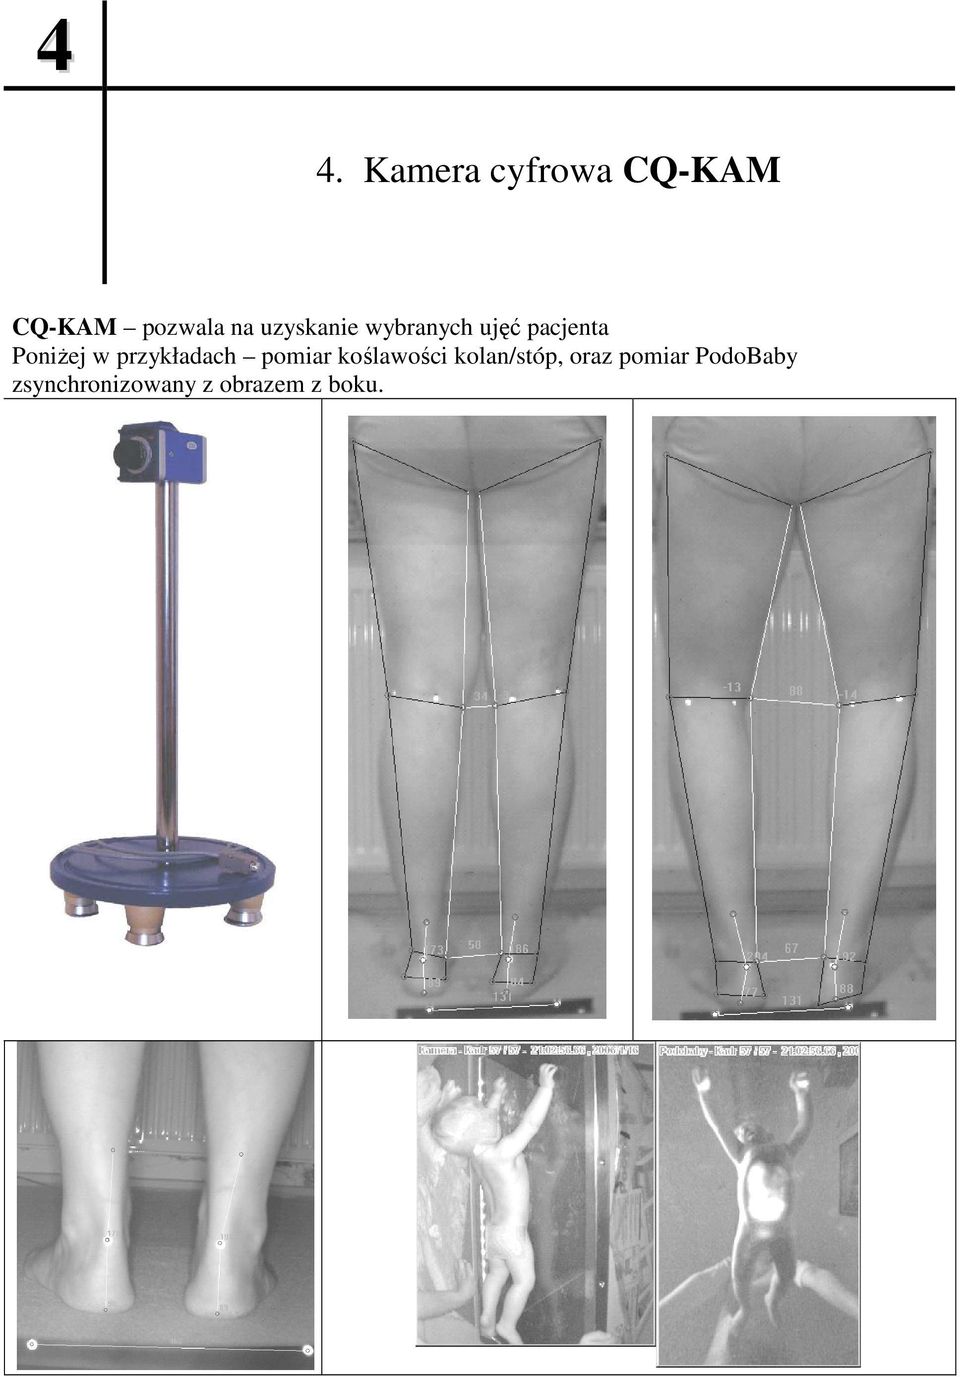 przykładach pomiar koślawości kolan/stóp, oraz